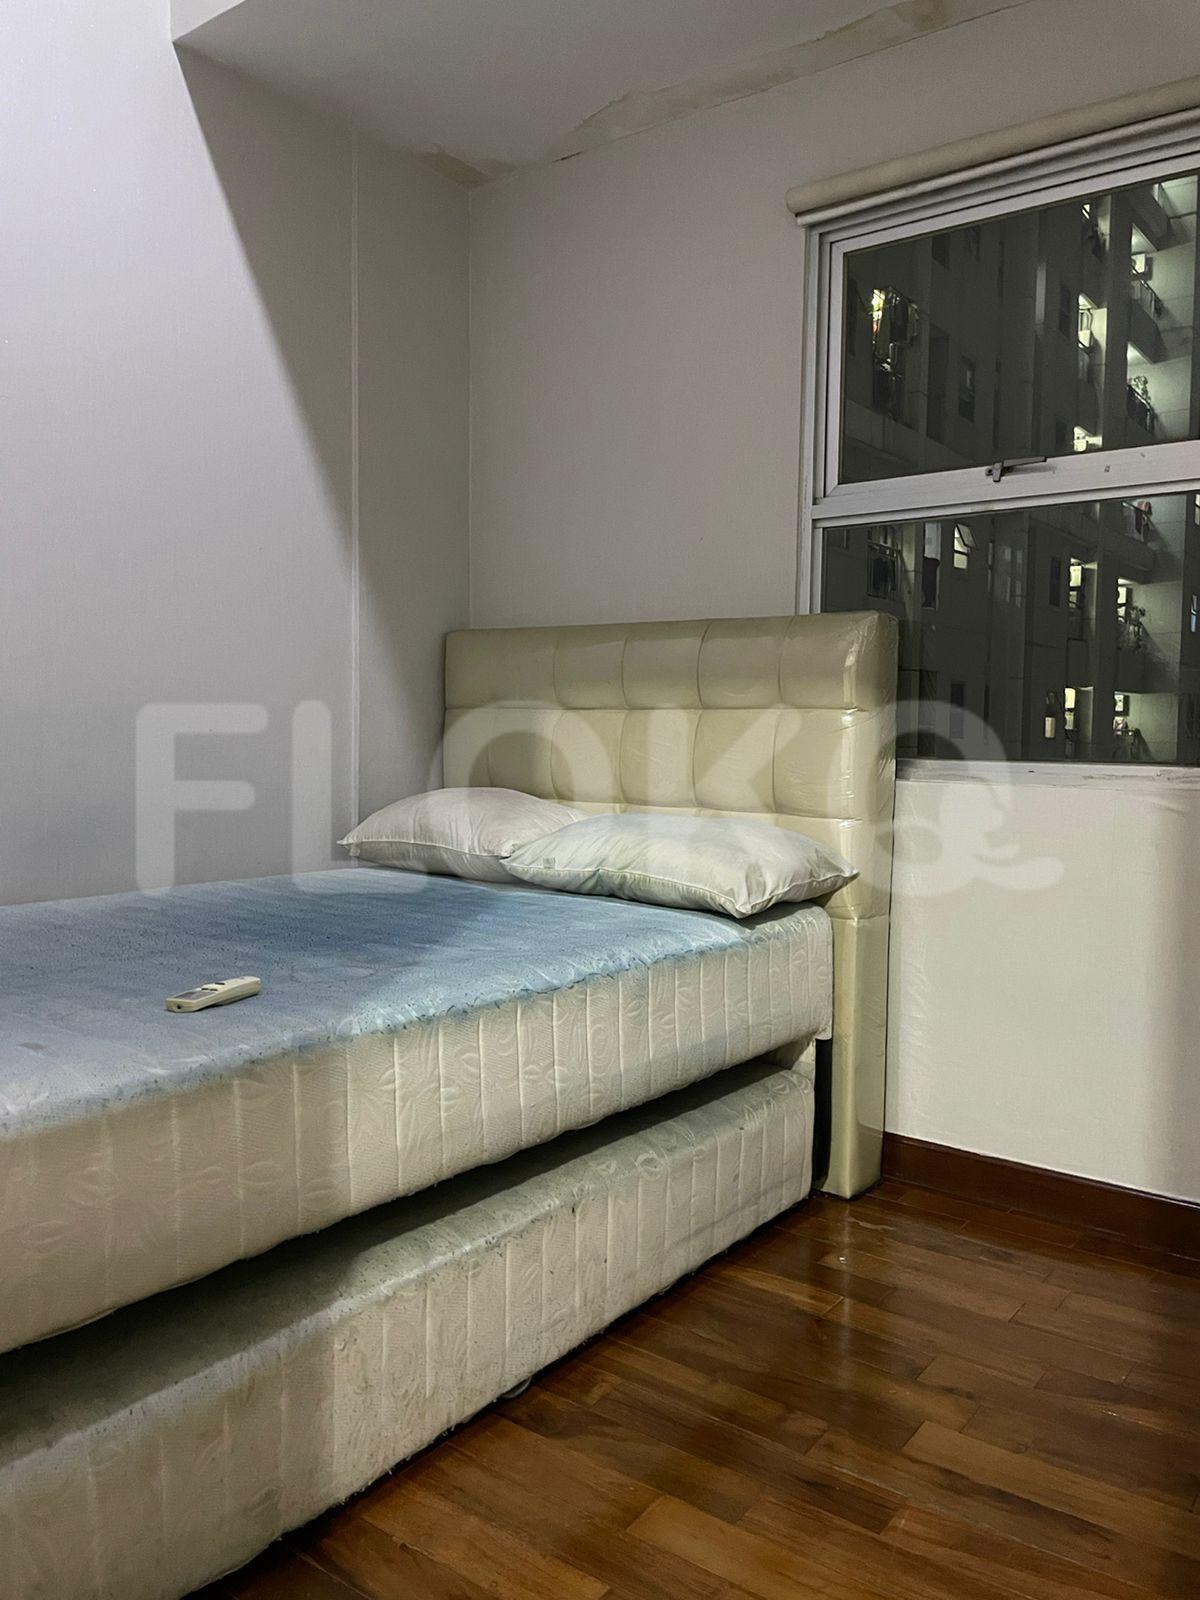 Sewa Apartemen Seasons City Apartemen Tipe 2 Kamar Tidur di Lantai 18 fgr243